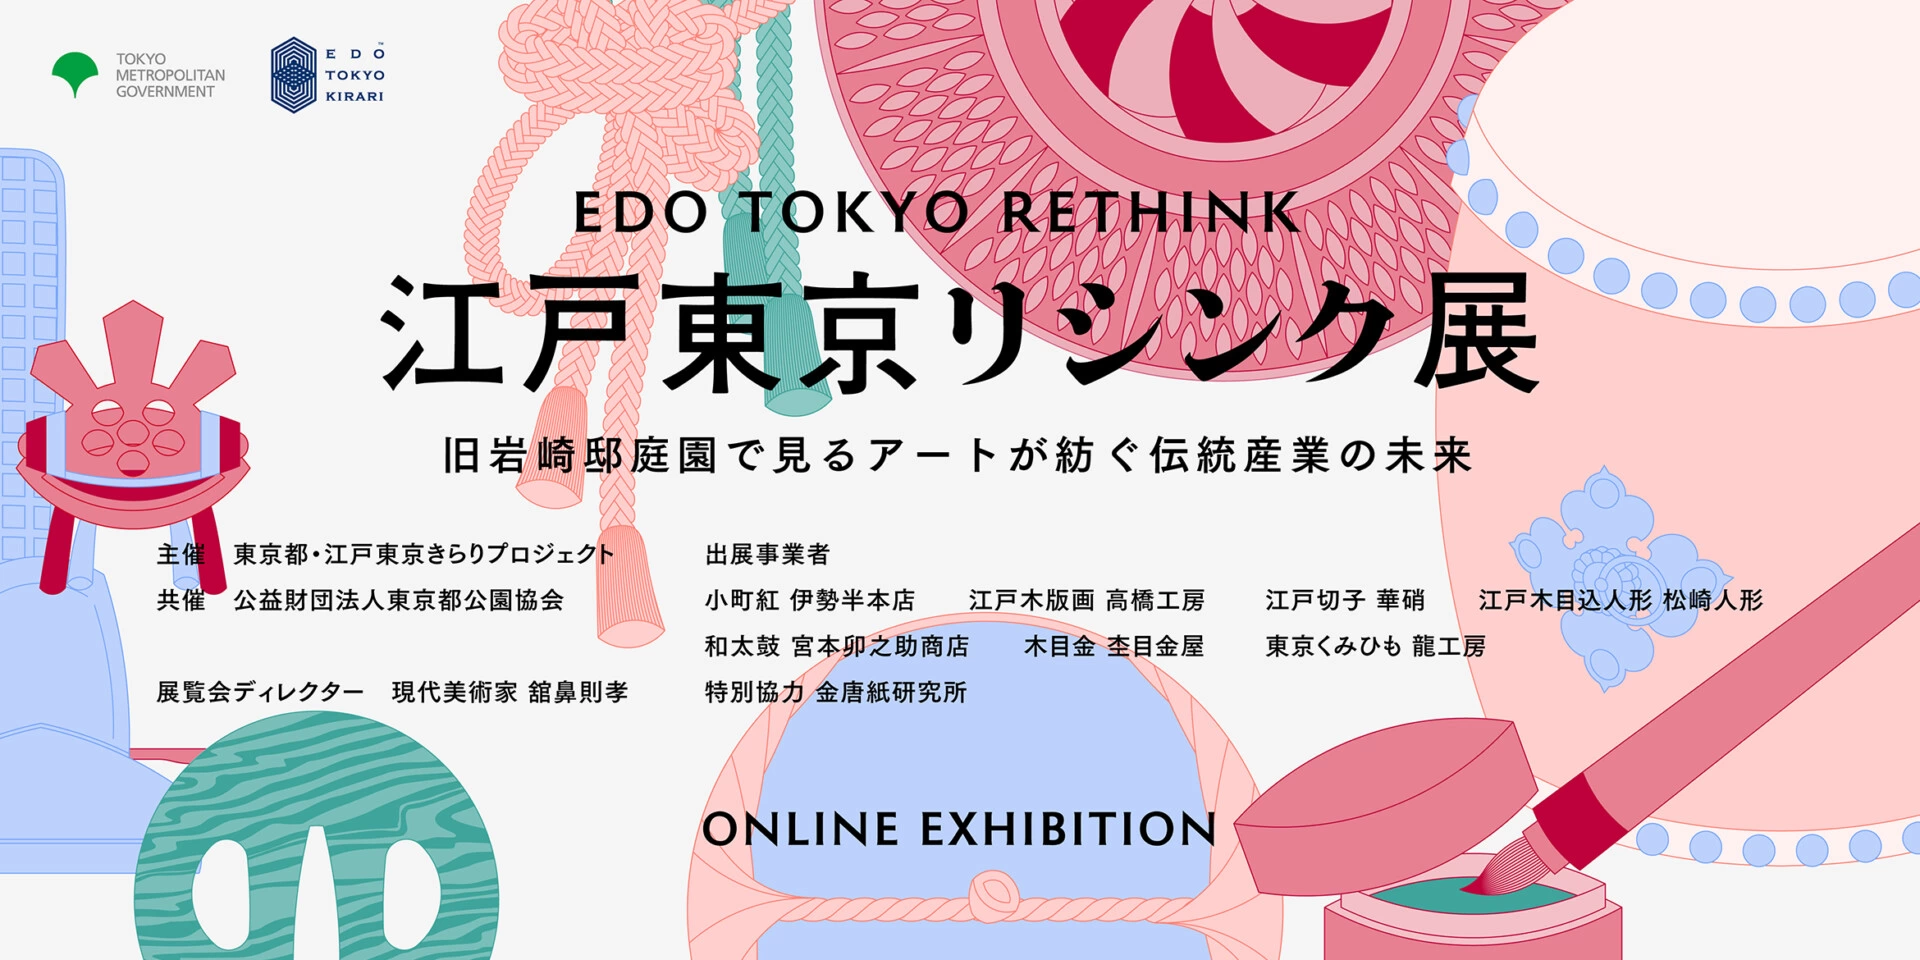 江戸東京リシンク展 - 旧岩崎邸庭園で見るアートが紡ぐ伝統産業の未来-